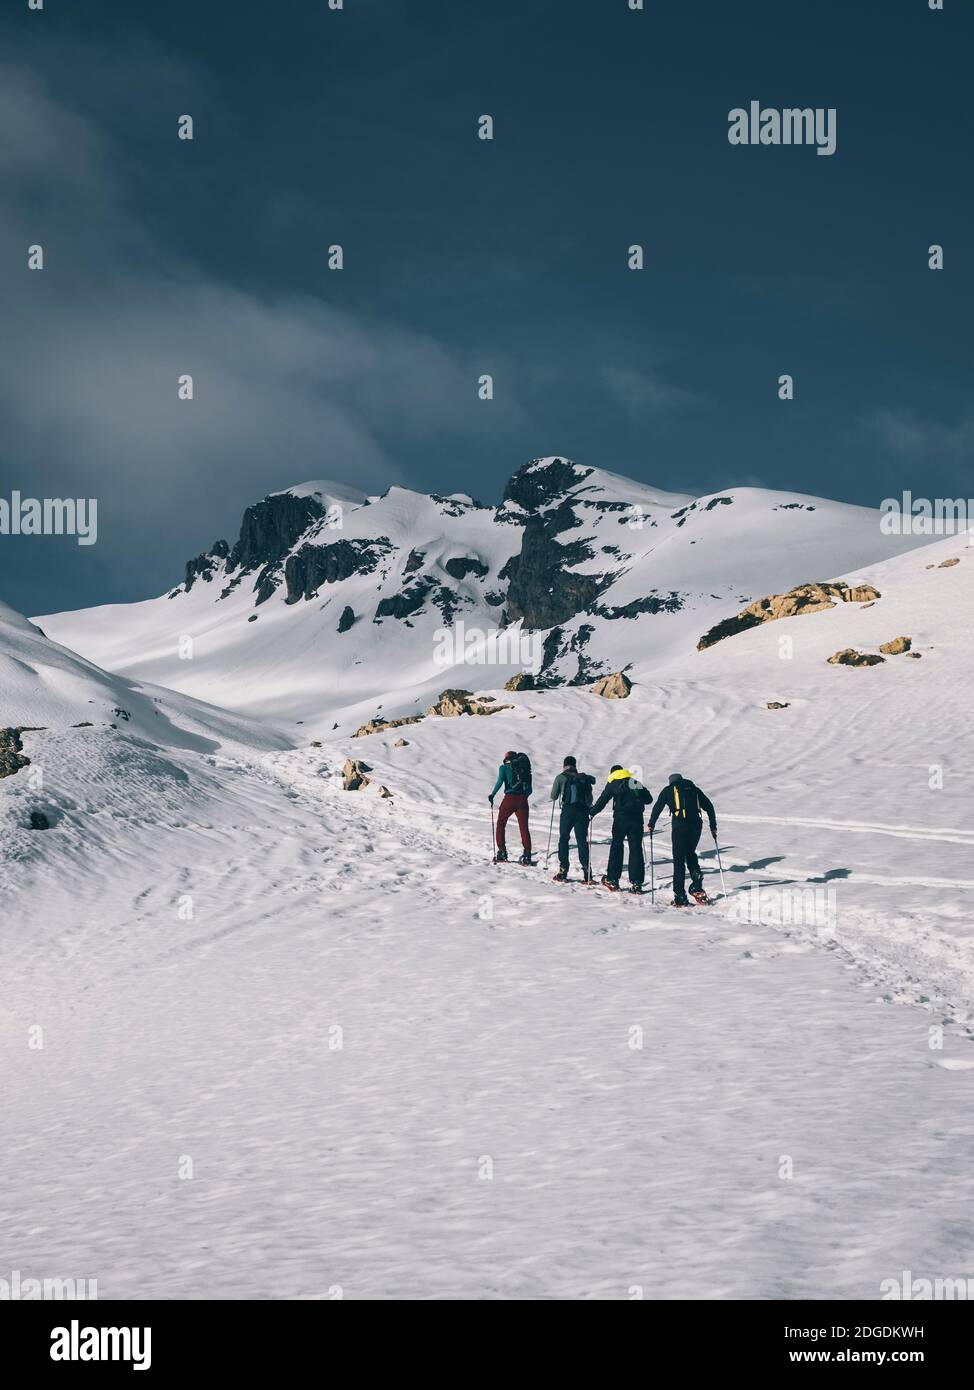 Eine Gruppe von männlichen Wanderern auf Schneeschuhen Richtung eines Berggipfels gegen schneebedeckte Berge, Portalet malerischen Pass zwischen Frankreich und Spanien Stockfoto